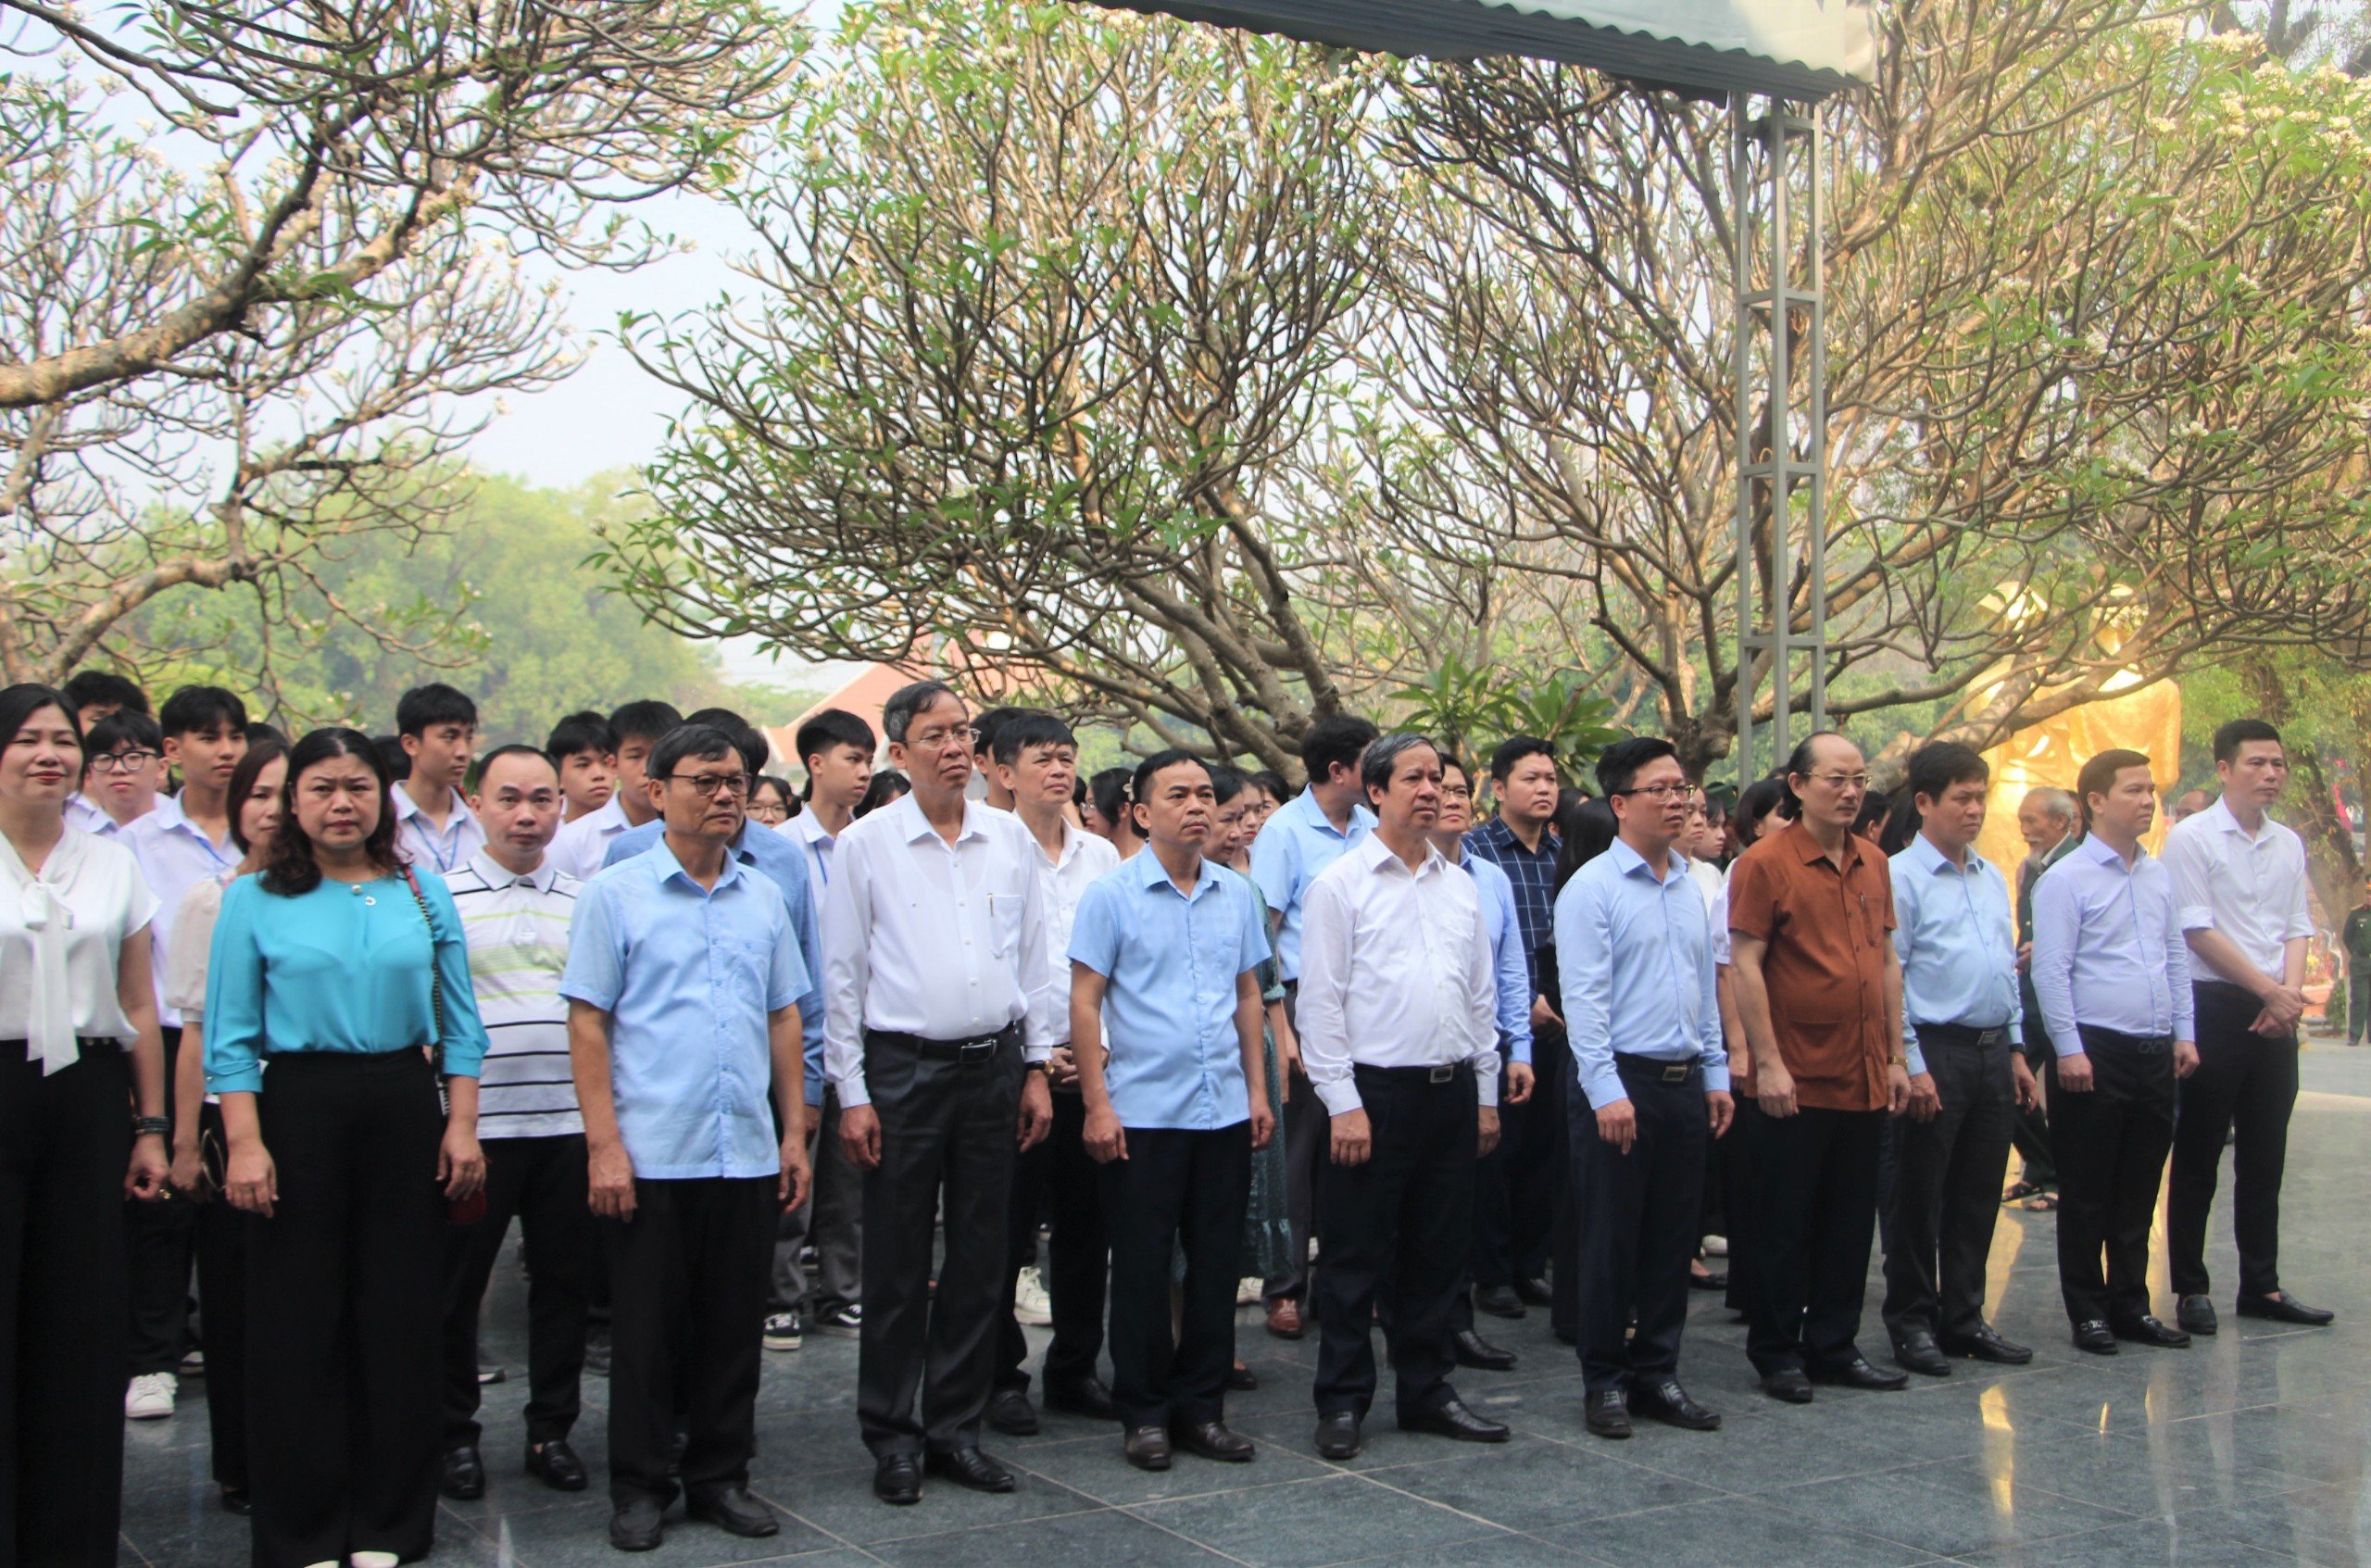 Đoàn công tác cùng lãnh đạo UBND tỉnh Điện Biên, Sở GD&ĐT, thầy trò trường THPT Thành phố Điện Biên Phủ thắp hương tại Nghĩa trang liệt sĩ A1.